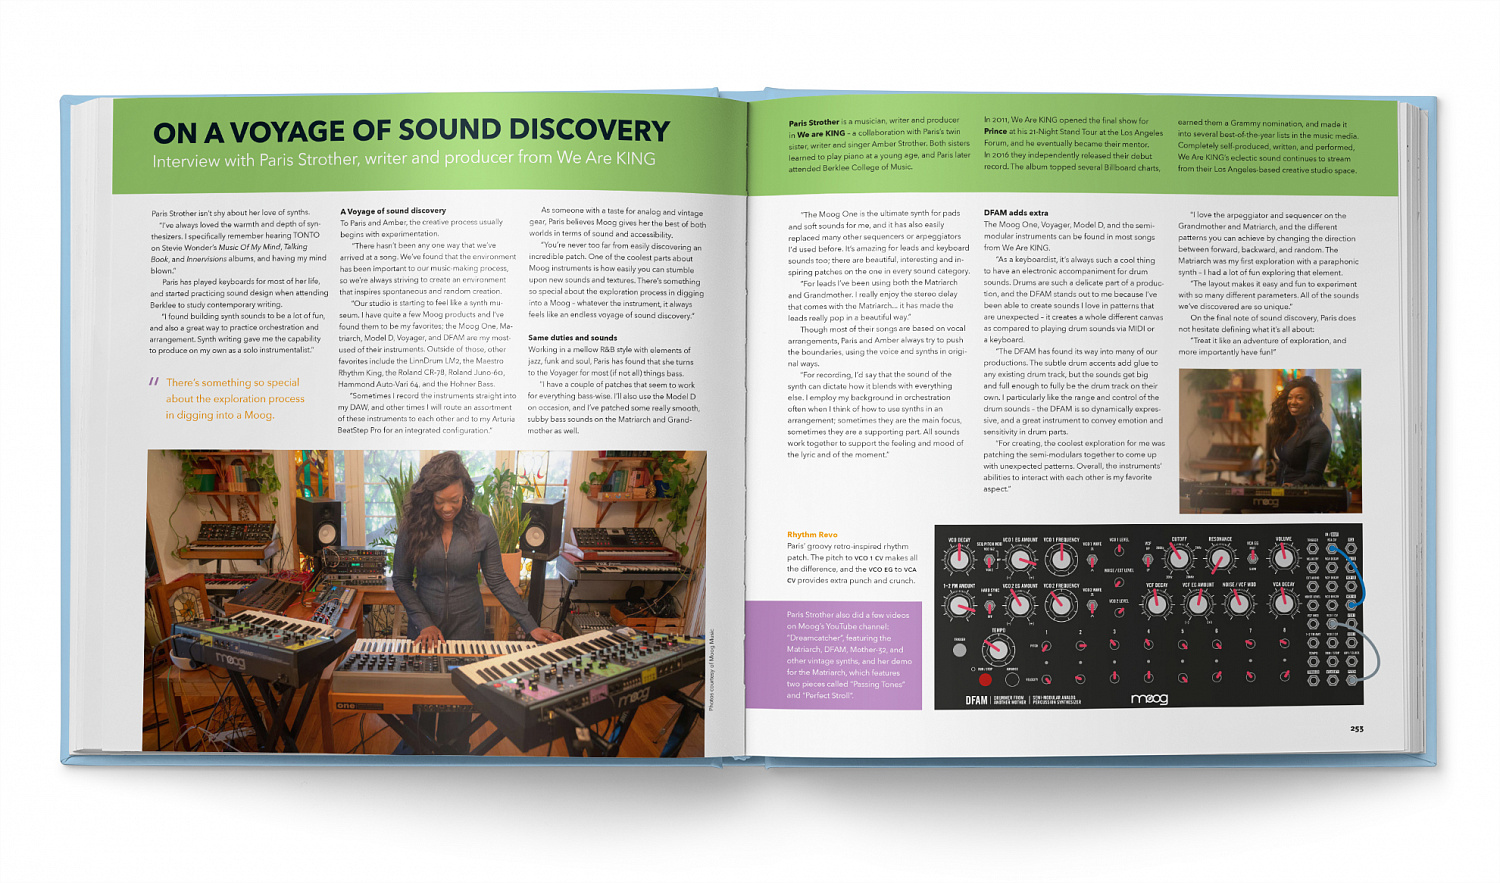 BJOOKS | Создатели книги PATCH & TWEAK объединились с Moog Music для того, чтобы создать 200-страничную книгу про полумодульные аналоговые синтезаторы